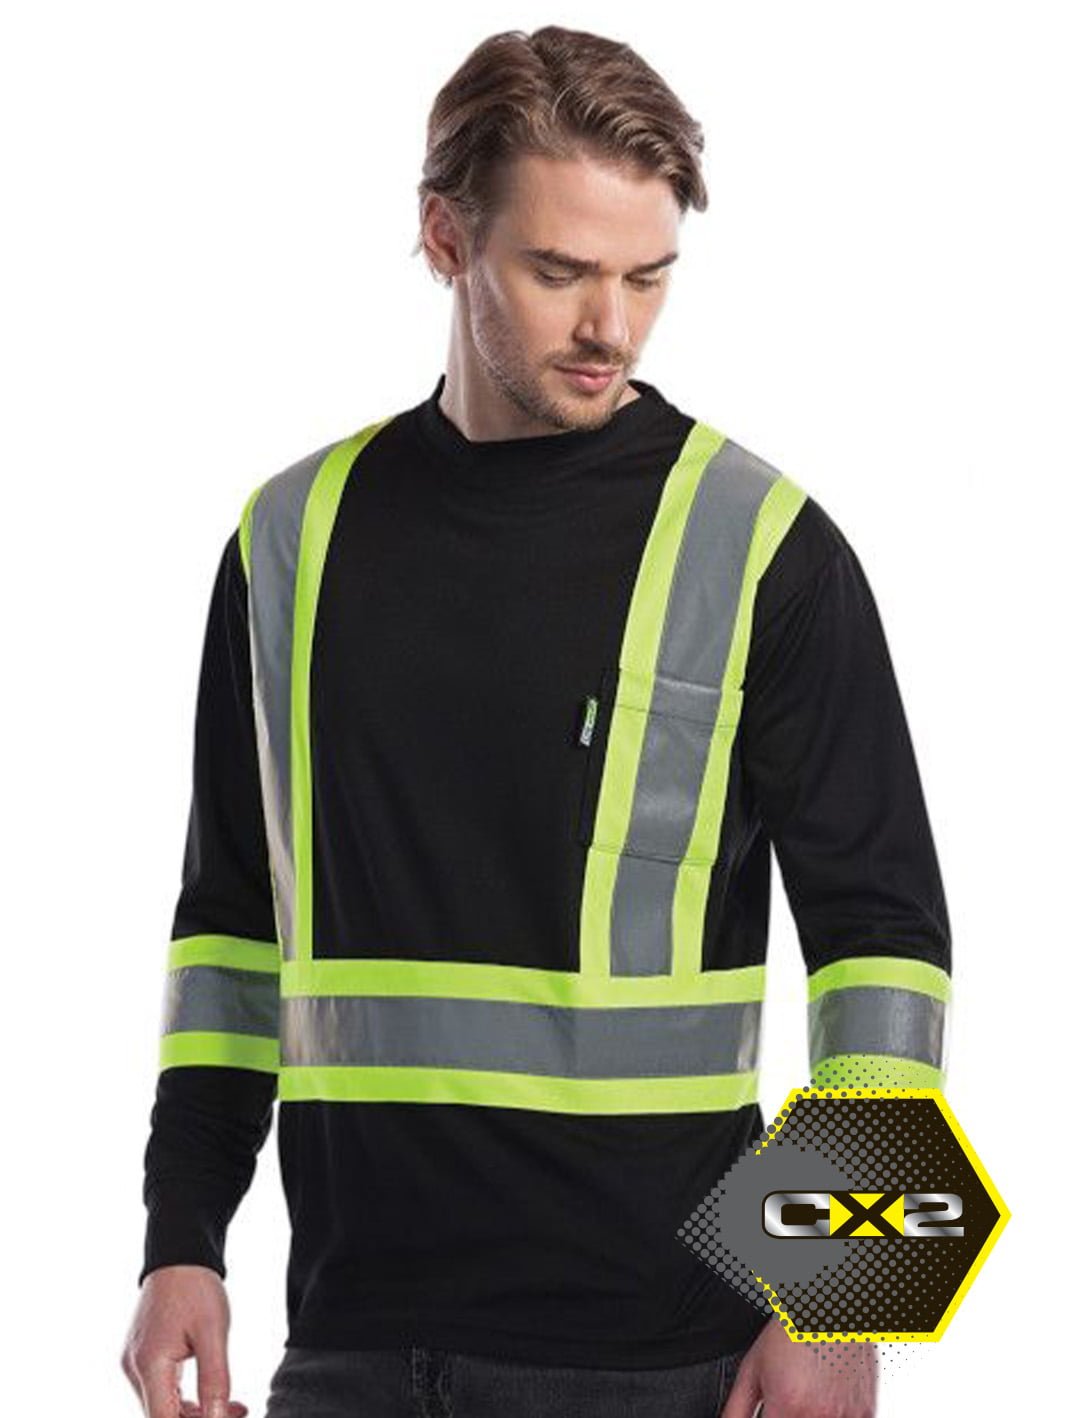 CX2 Hi-Vis Lookout Hi-Vis Safety Long Sleeve Shirt #S05970